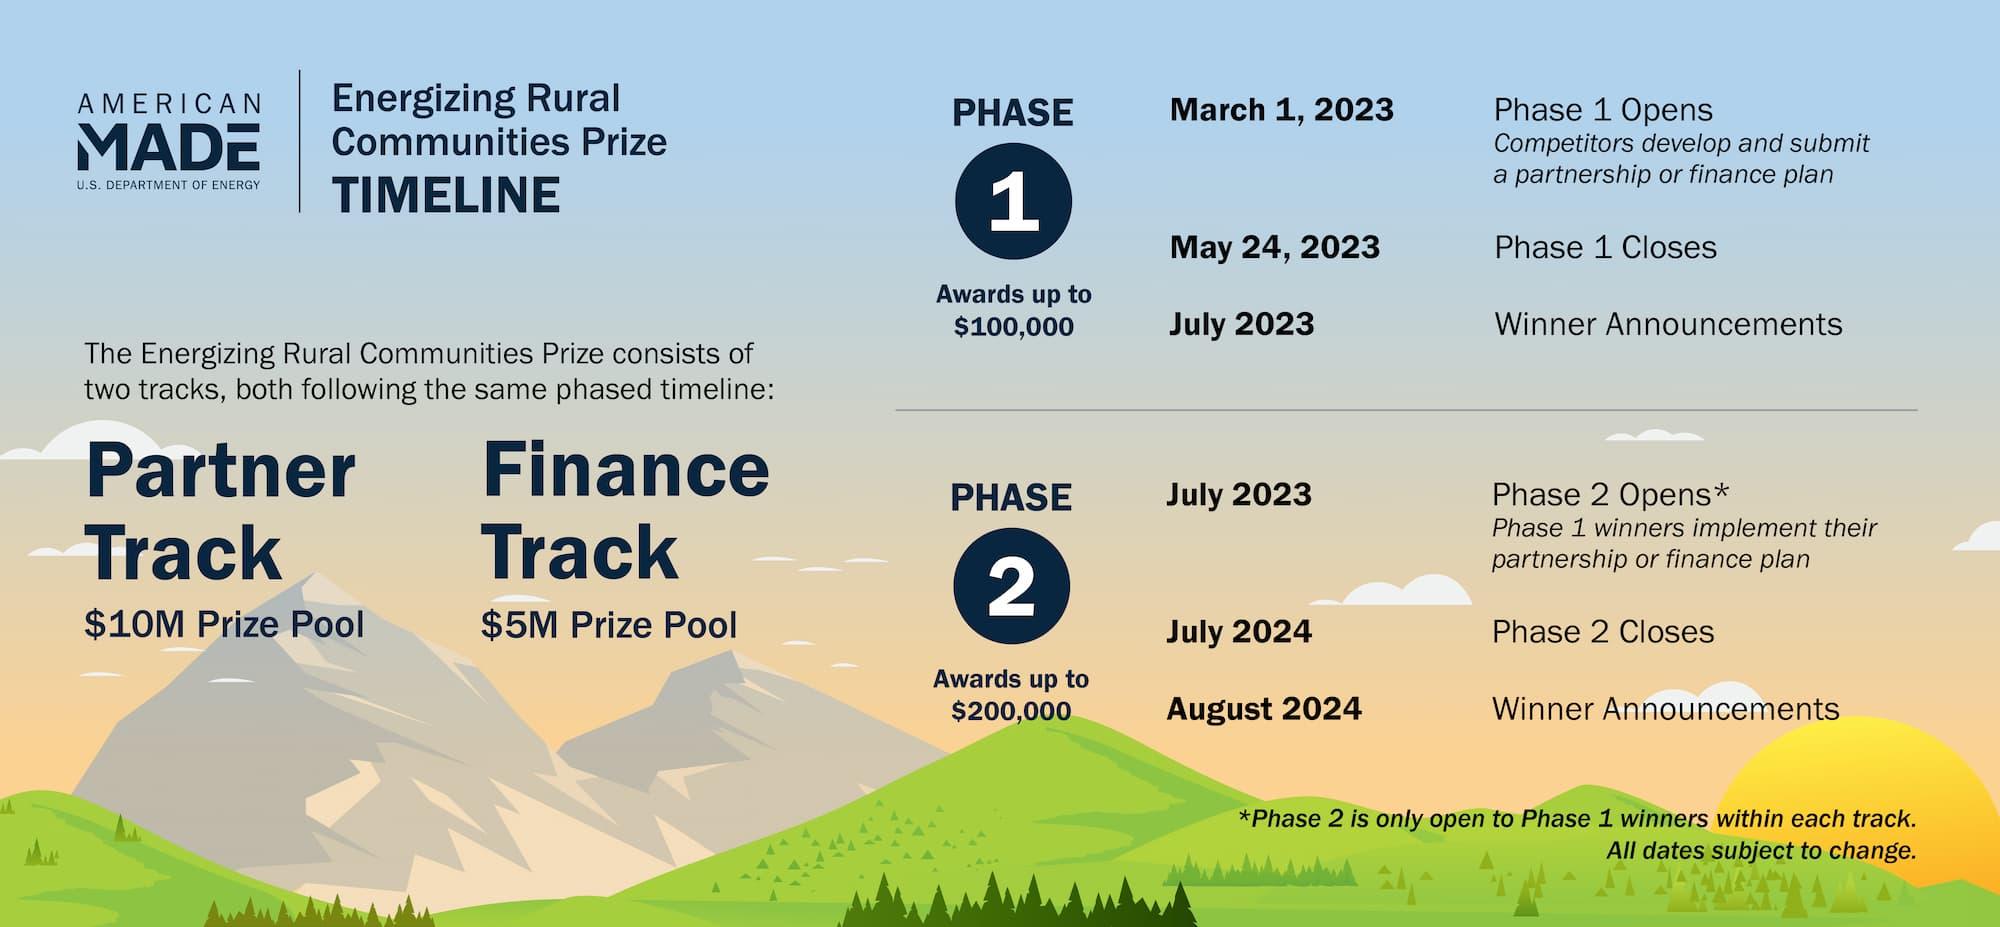 Timeline for Energizing Rural Prize. Partner Track: $10M Prize Pool, Finance Track: $5M Prize Pool.